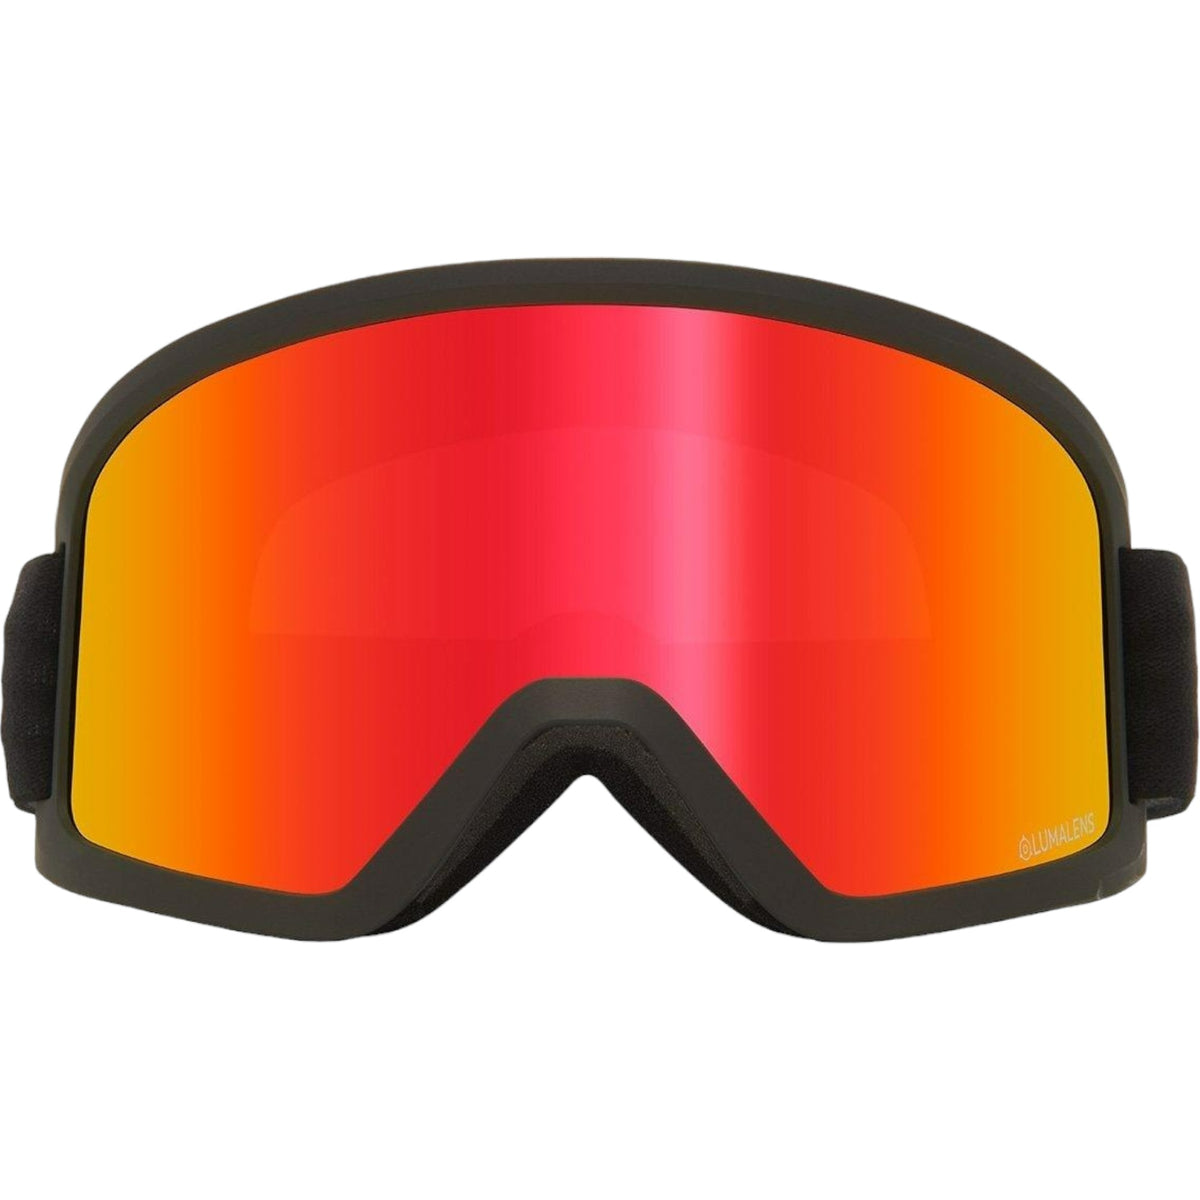 DX3 OTG Adult Ski Goggles